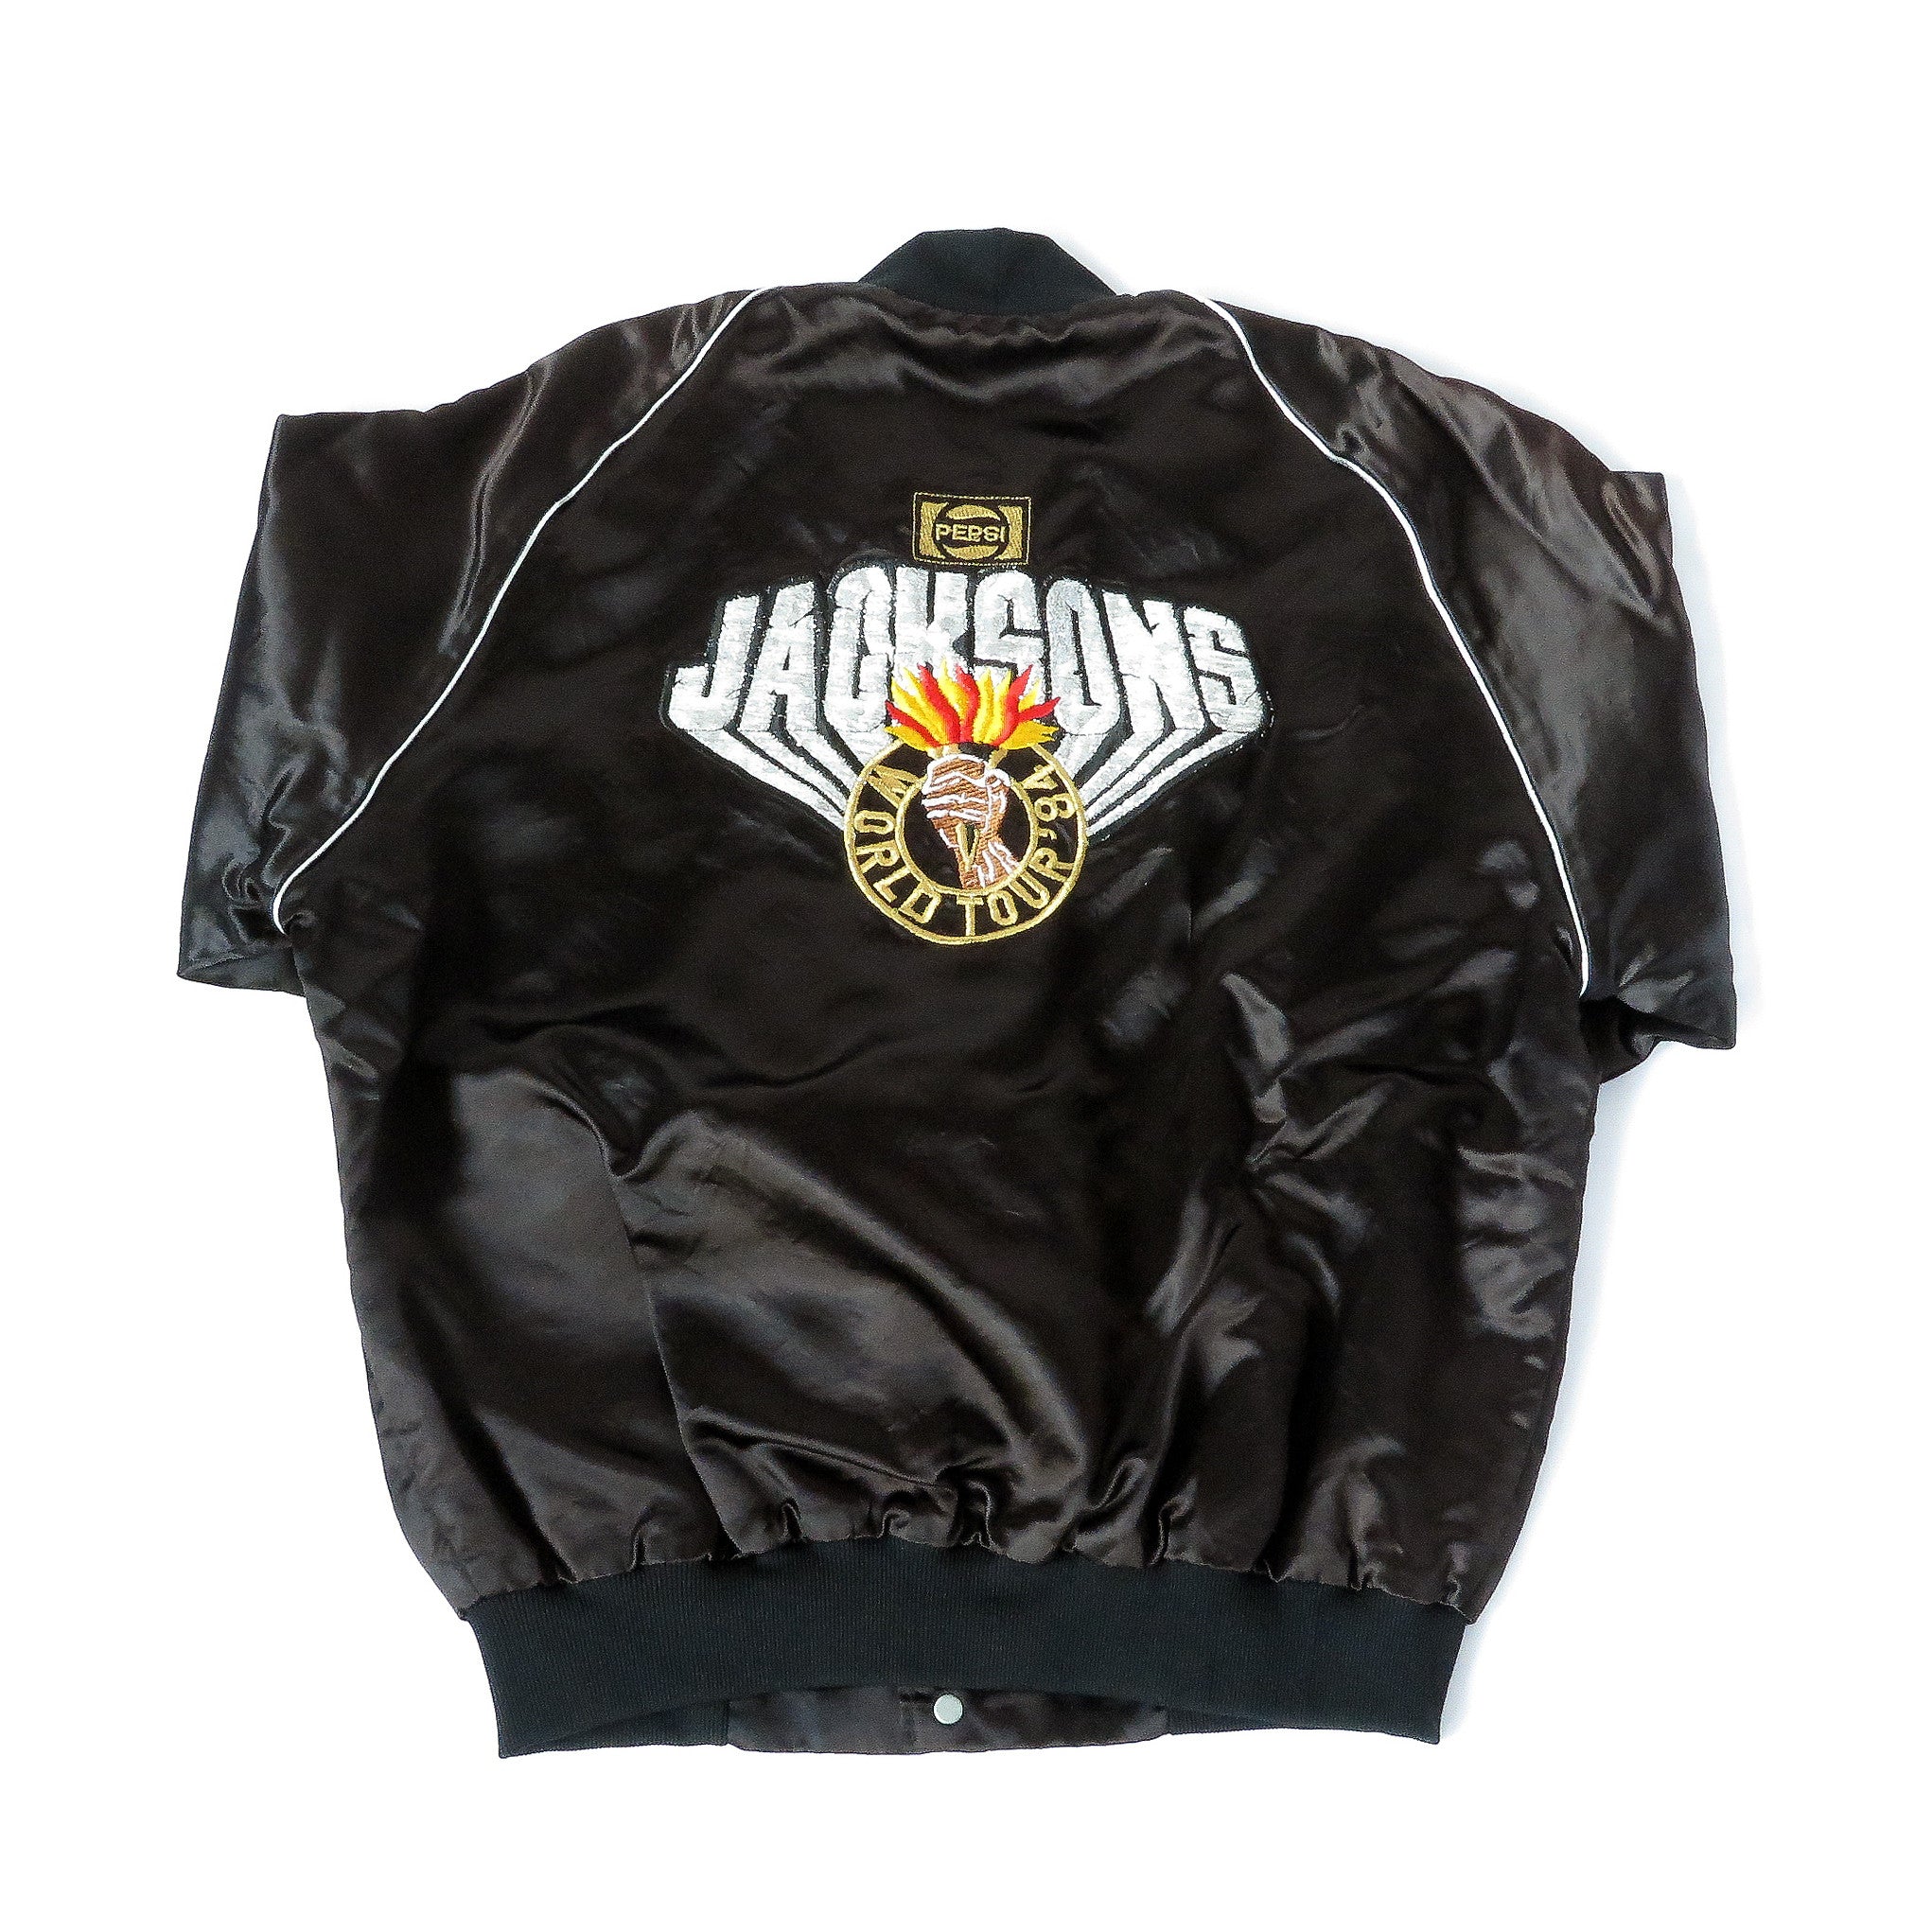 Vintage Jacksons 1984 World Tour Jacket Sz XL